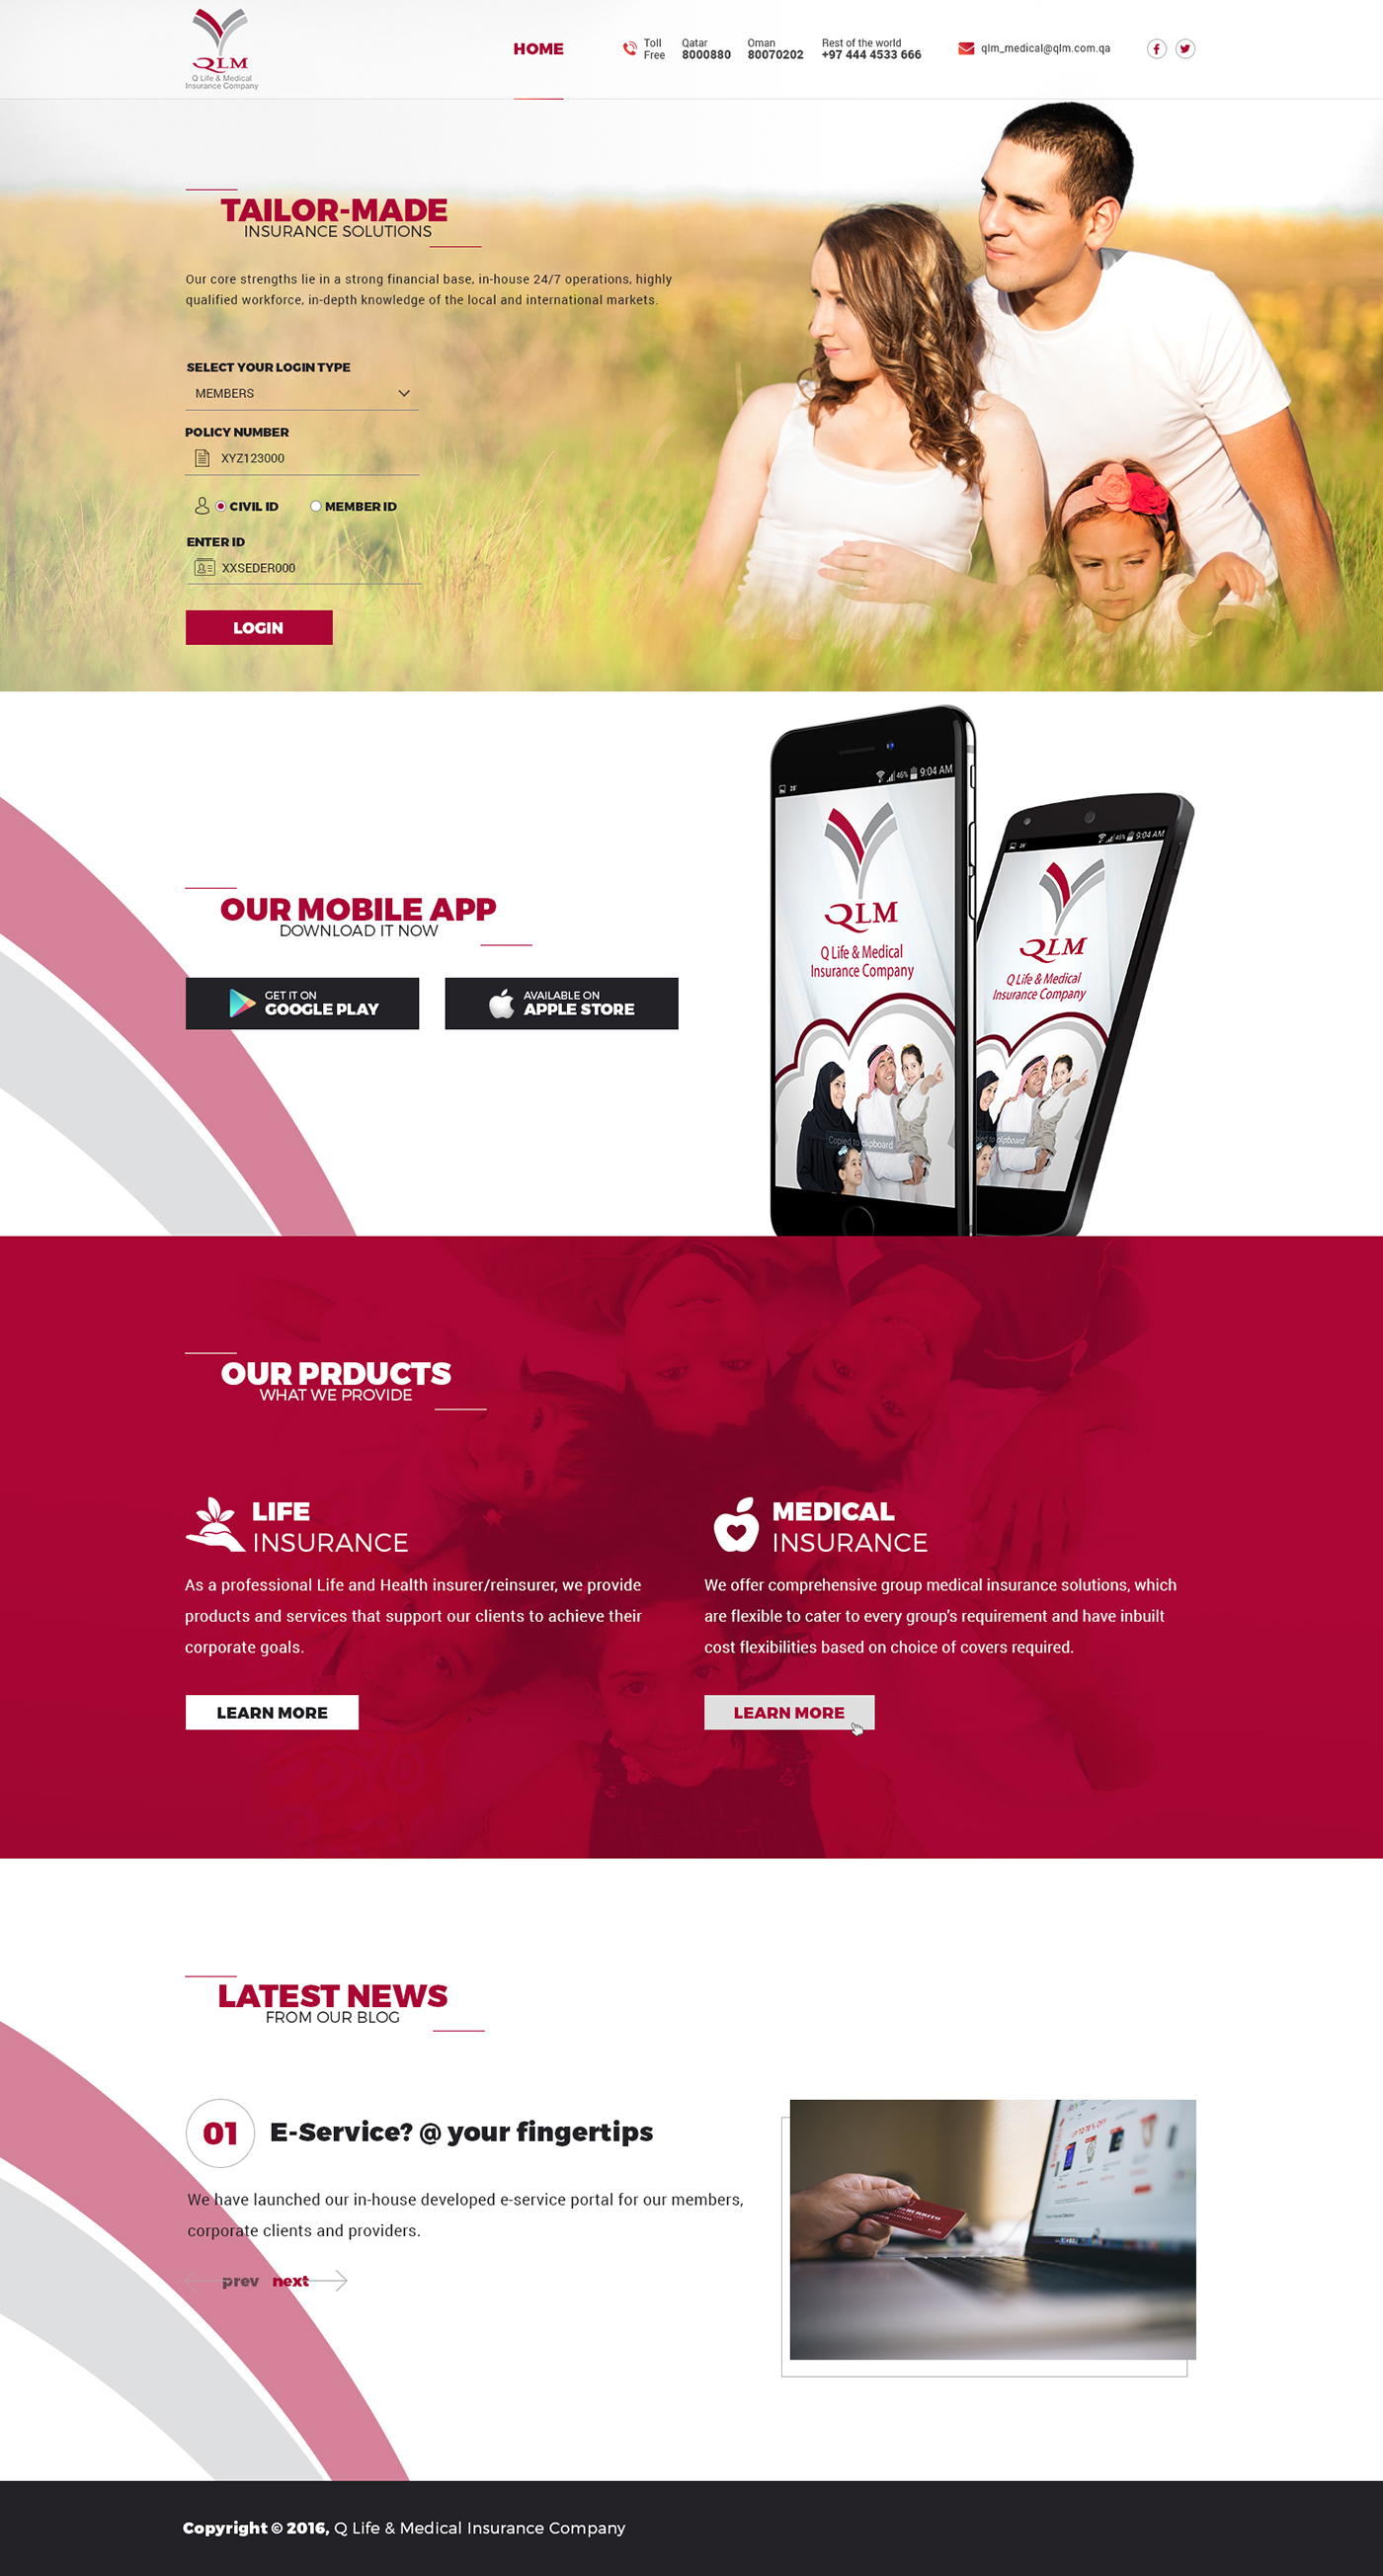 qlm insurance medical tutucon Web Design  ui design